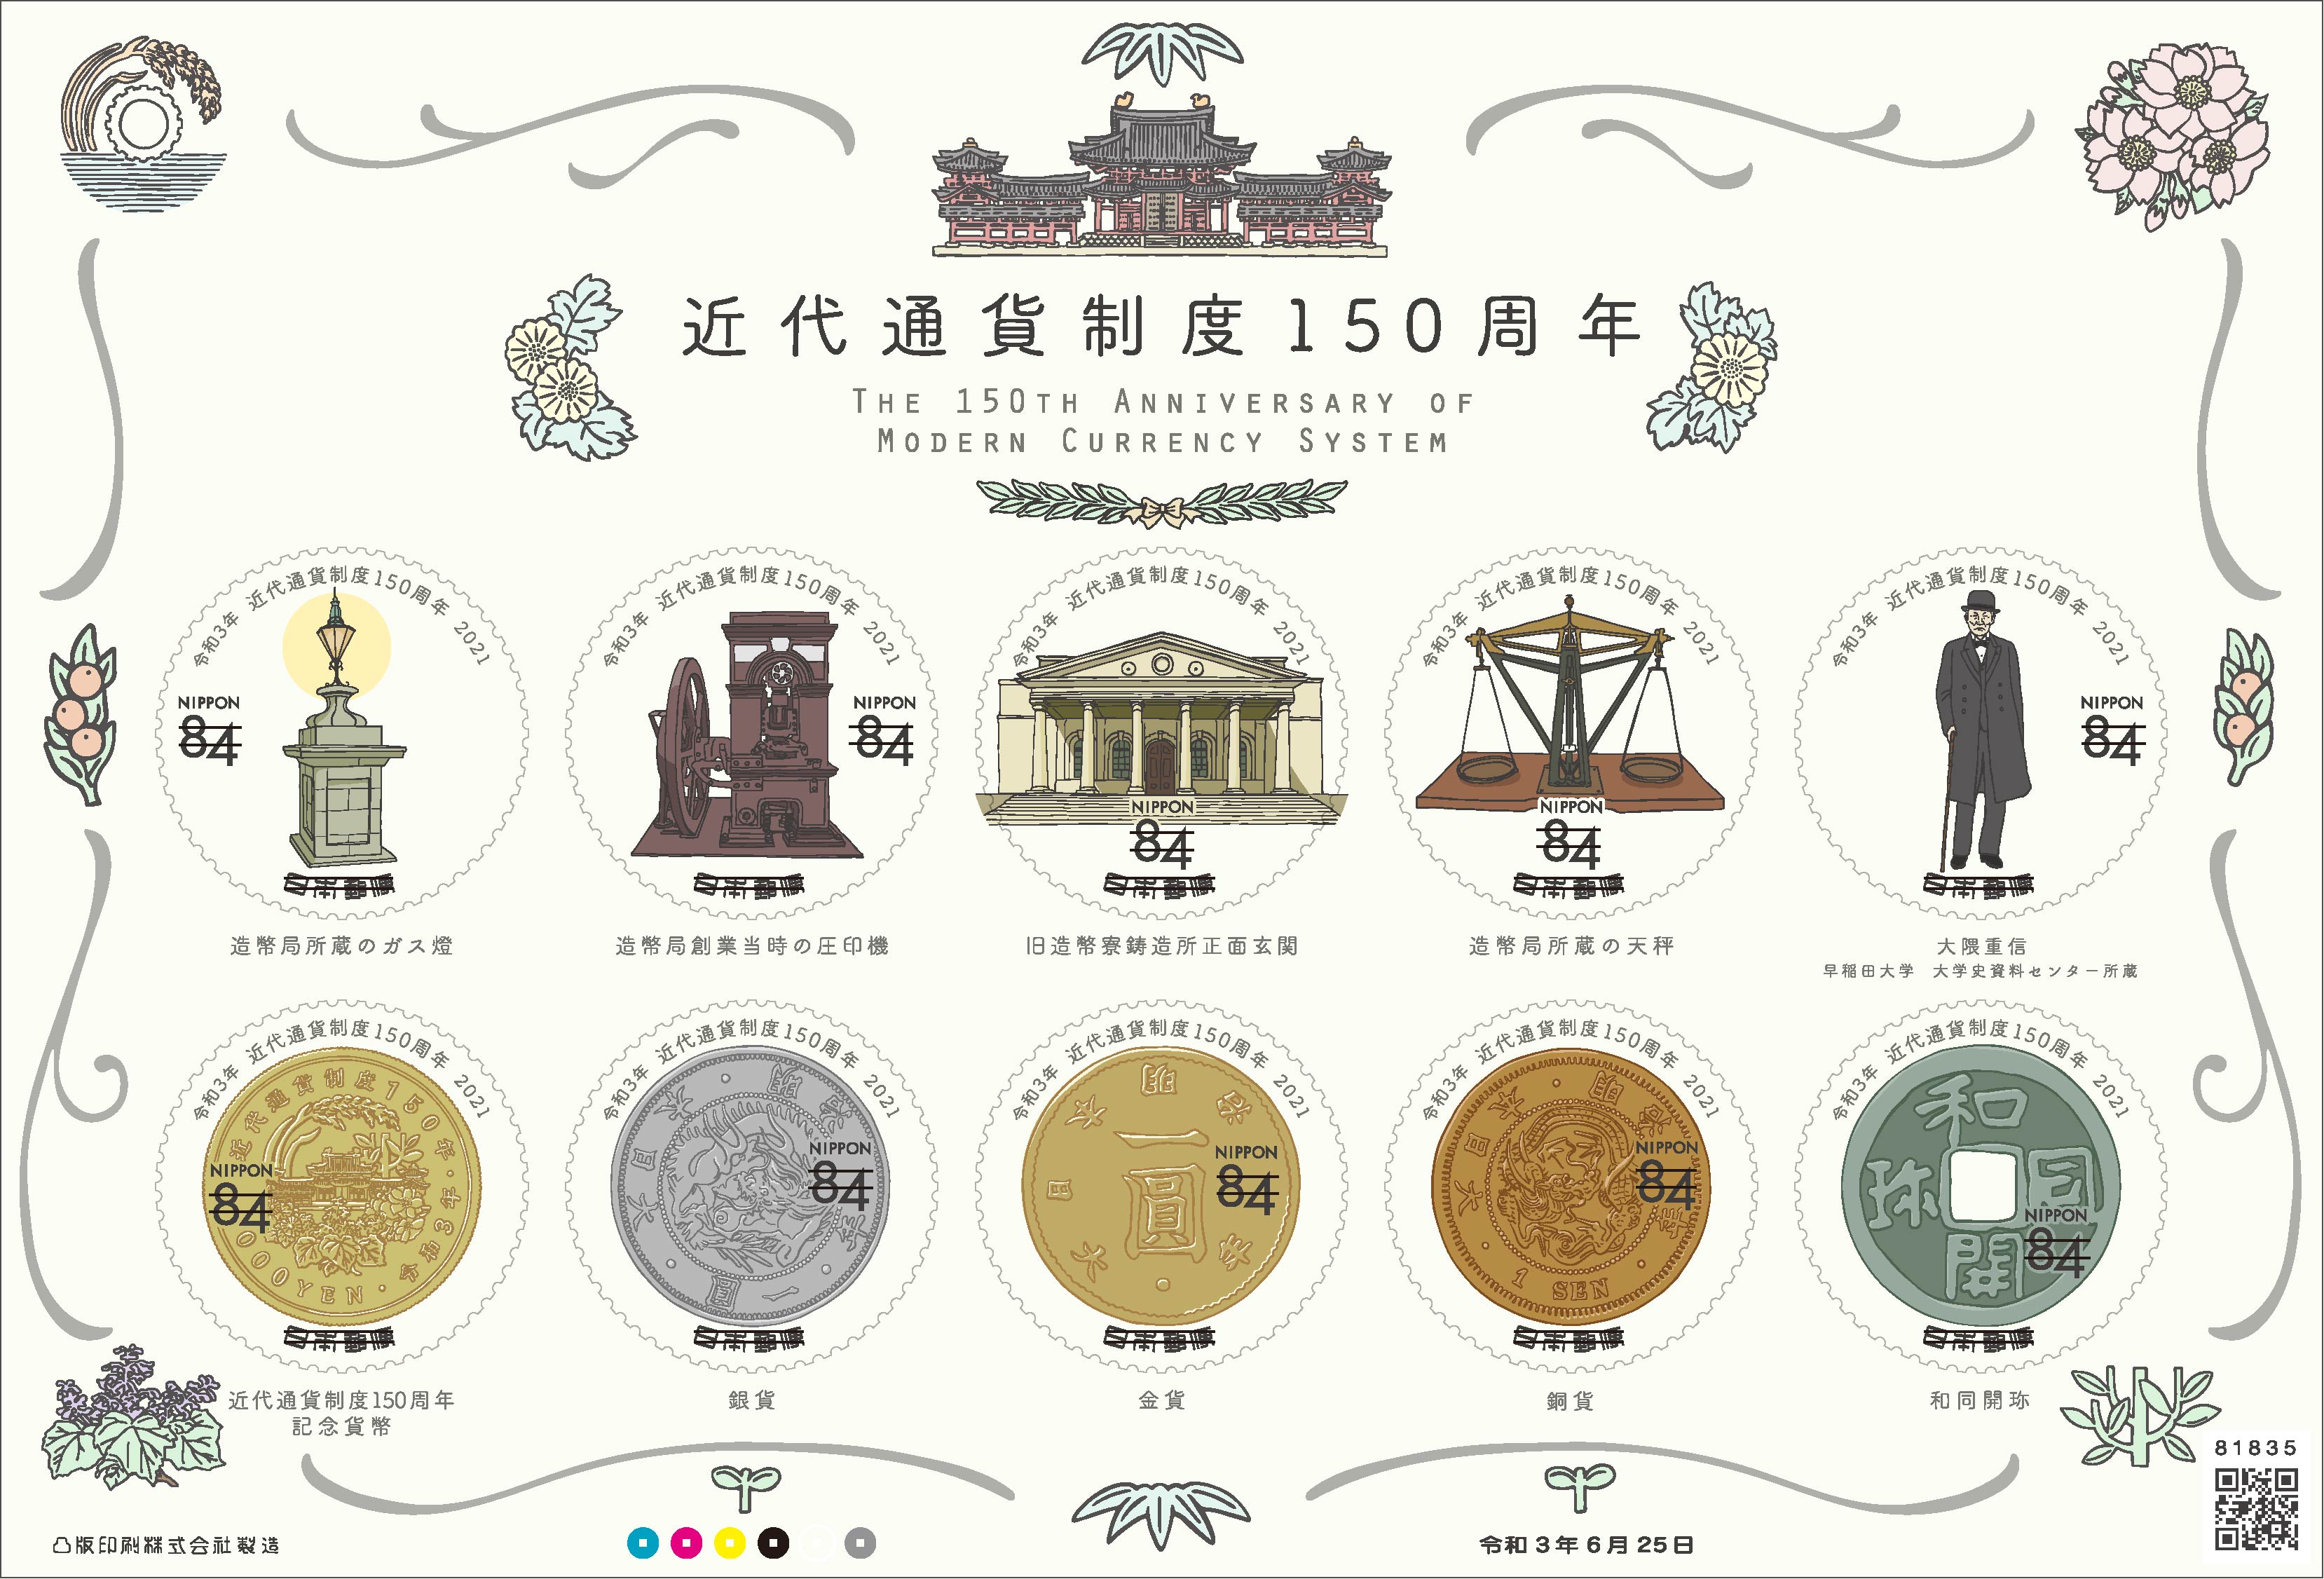 近代通貨制度150周年 | 日本郵便株式会社